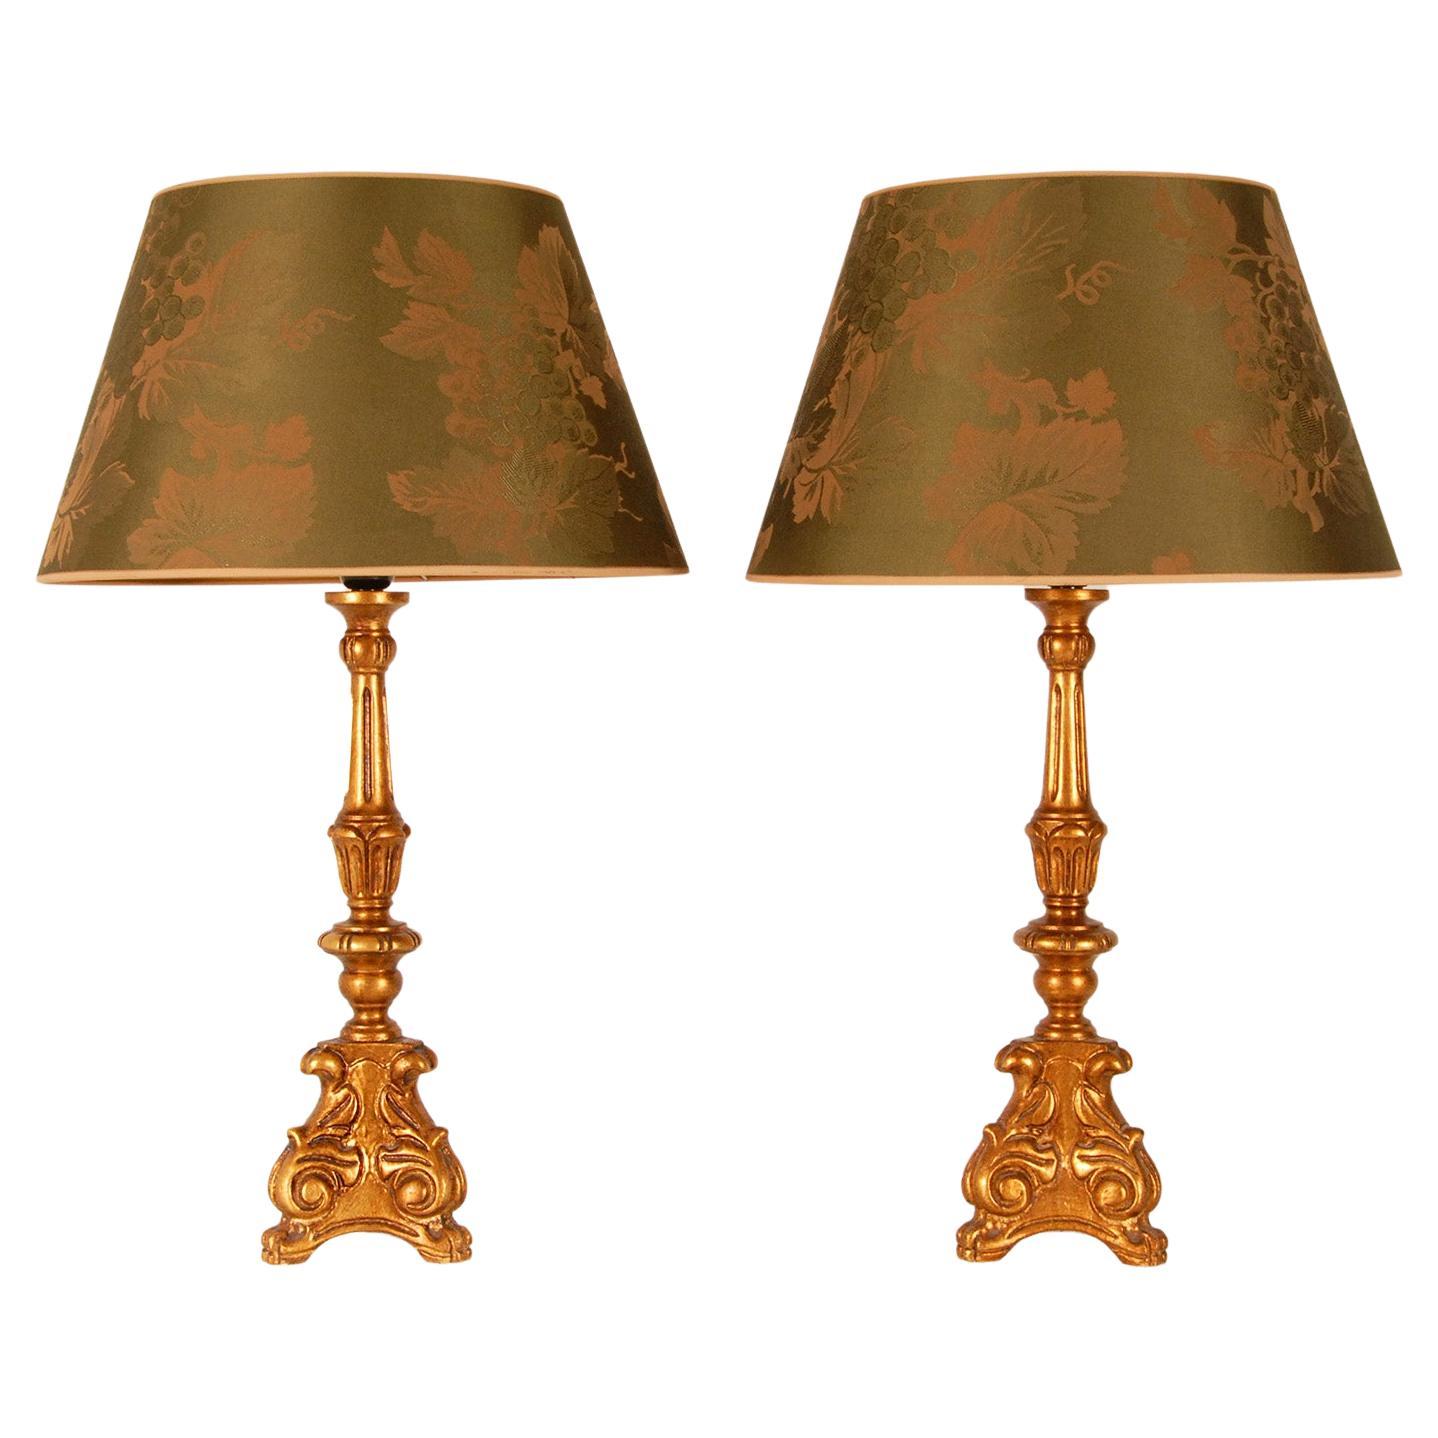 Vintage Französisch Landhausstil Gold Giltwood Grün Barock Tischlampen, ein Paar